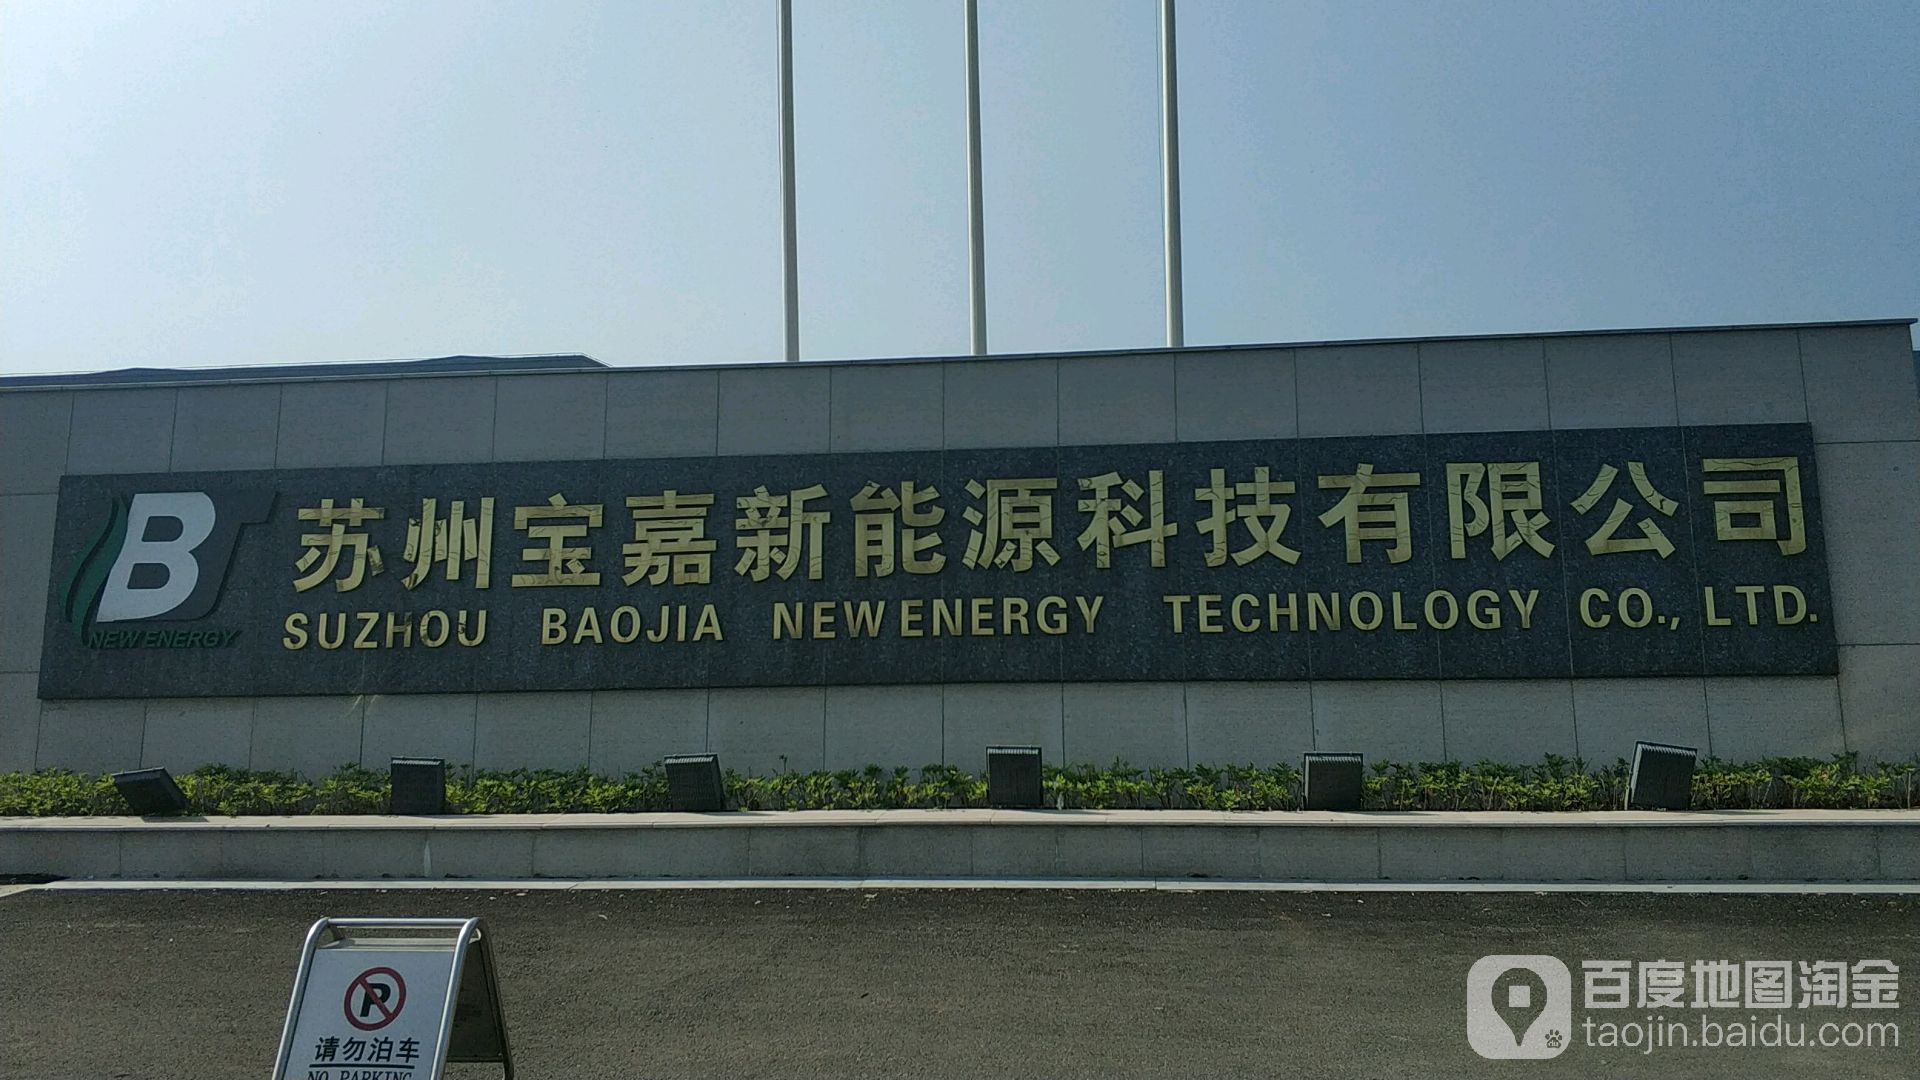 蘇州寶嘉新能源科技有限公司